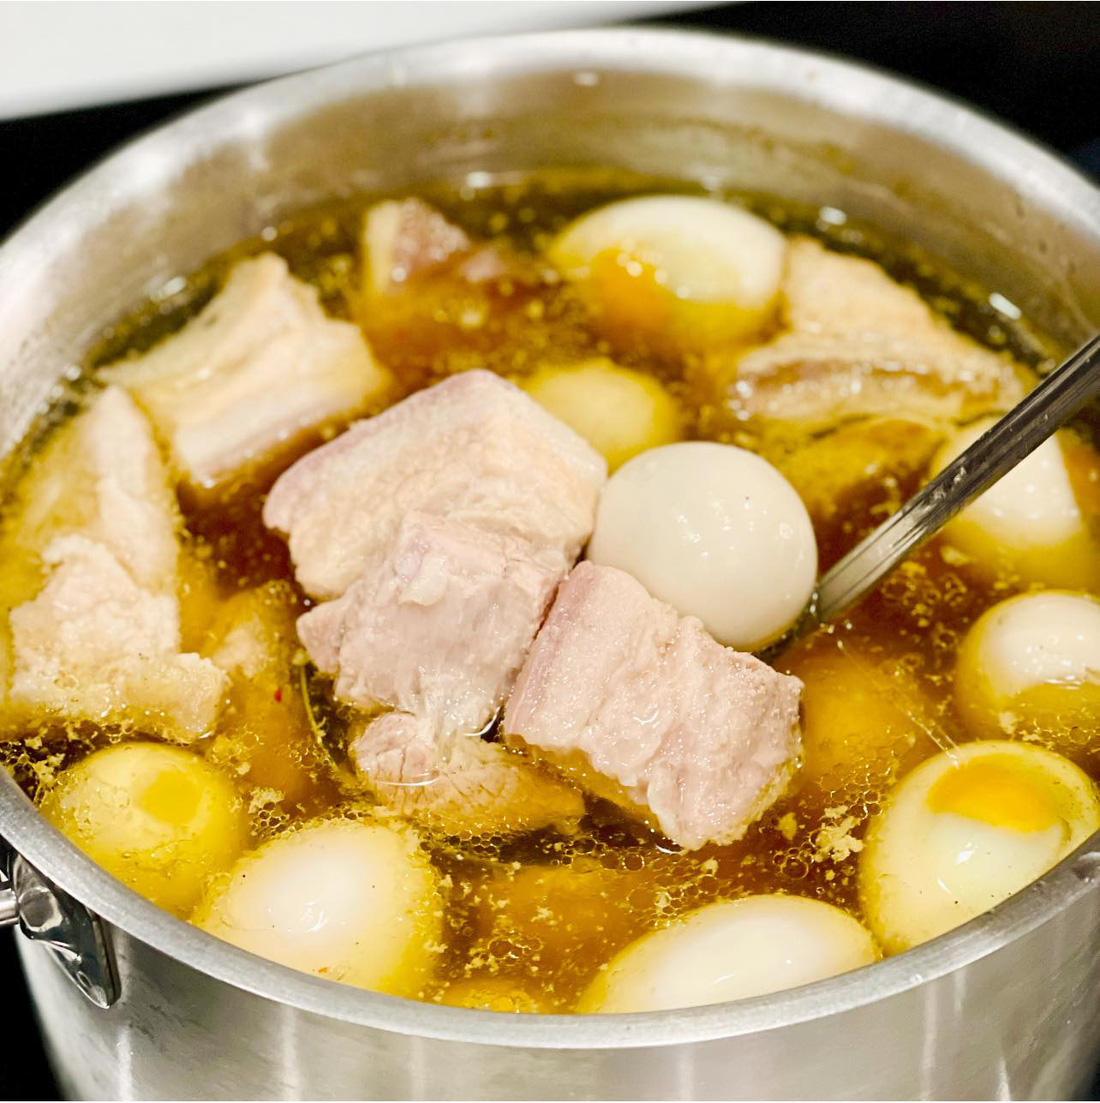 Đầu bếp Võ Quốc rủ người Sài Gòn nấu nướng để ăn ngon mà vui ngày giãn cách - Ảnh 3.